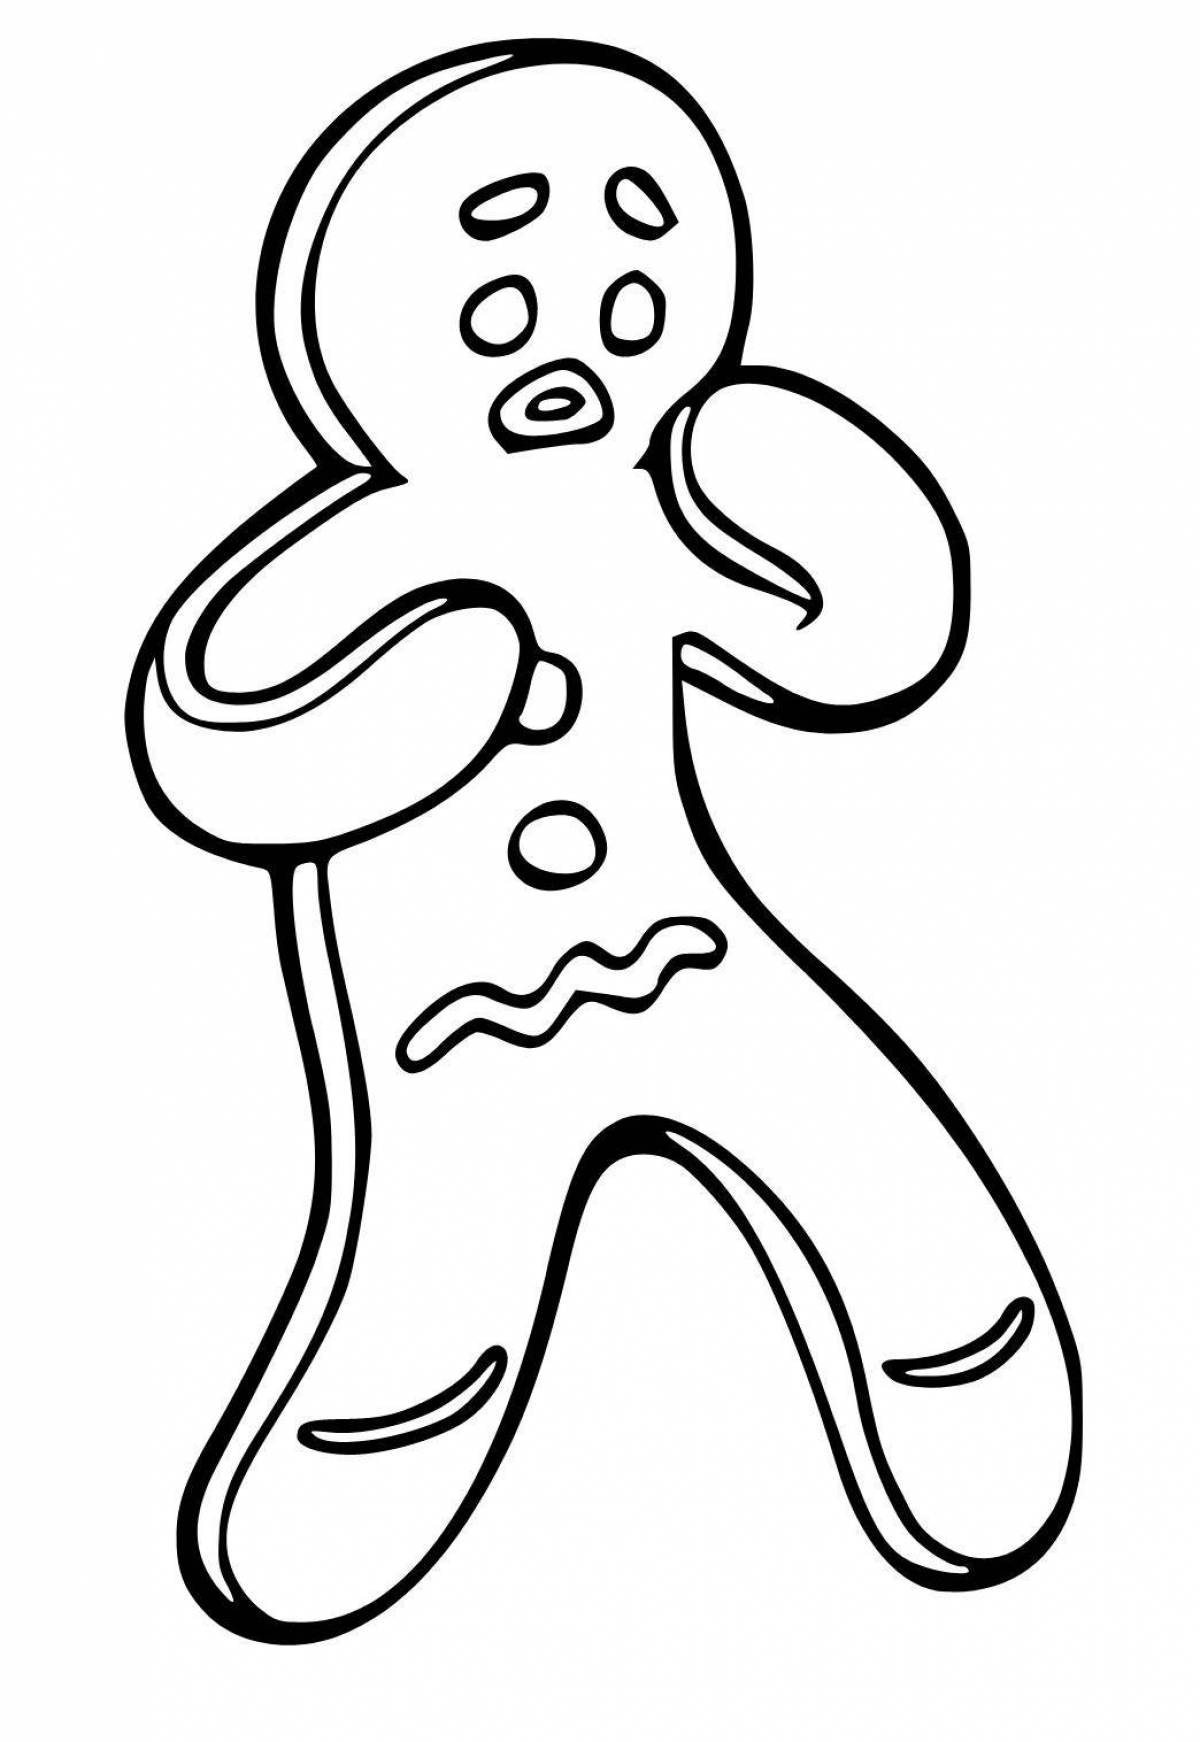 Coloring book humorous gingerbread man